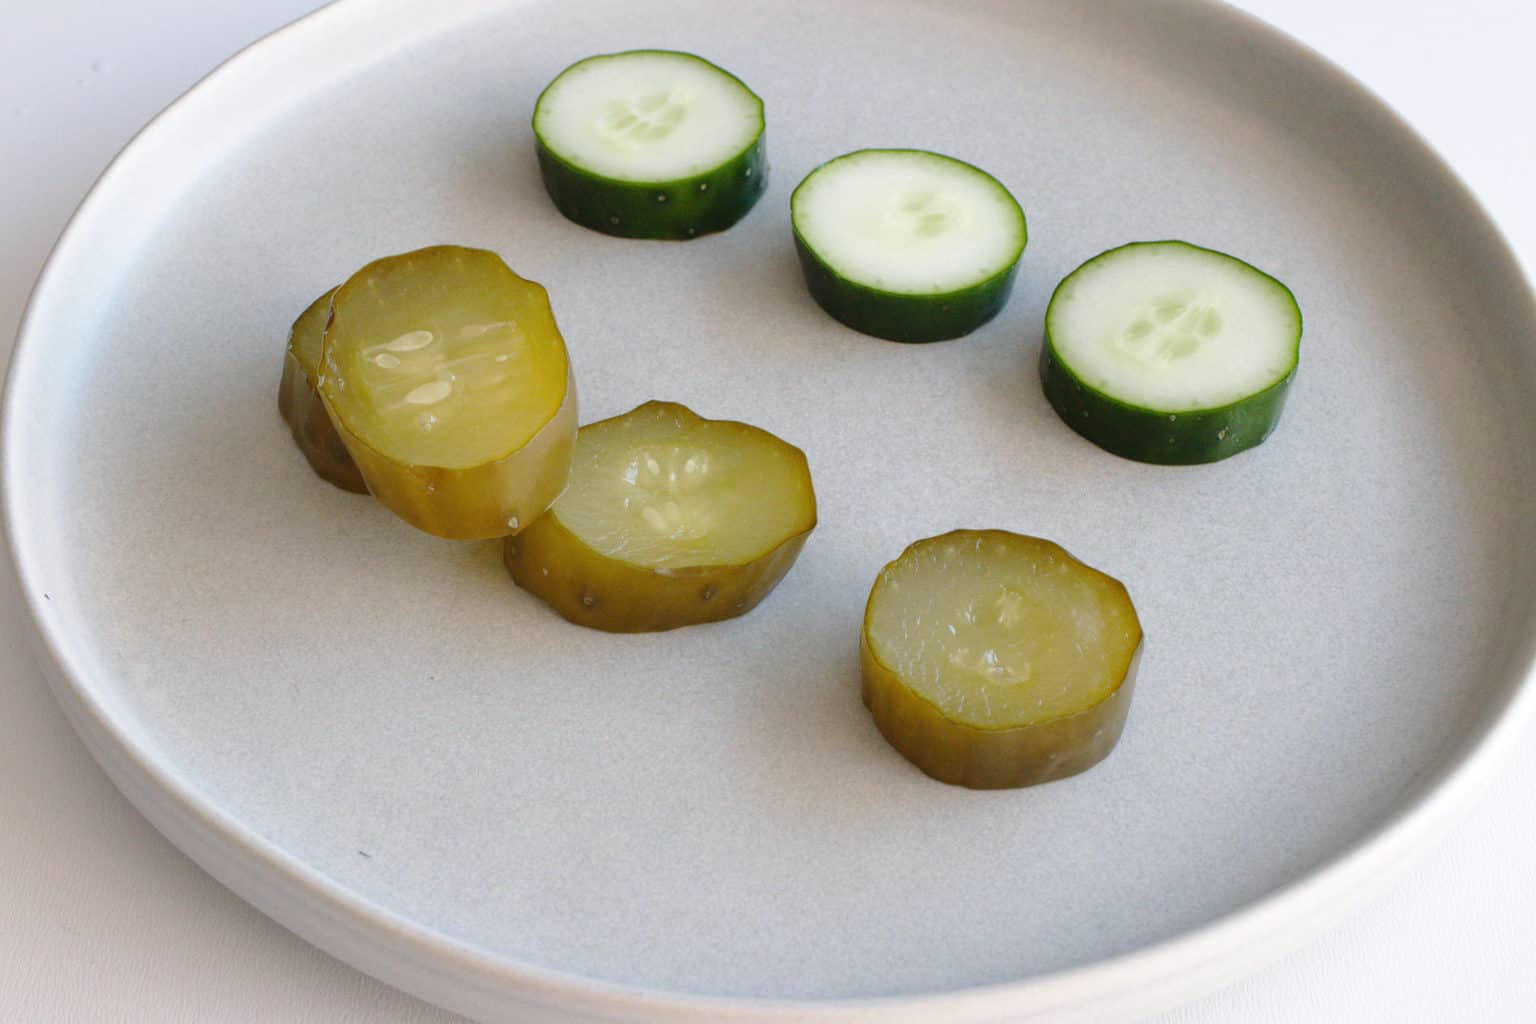 Easy homemade fermented pickles